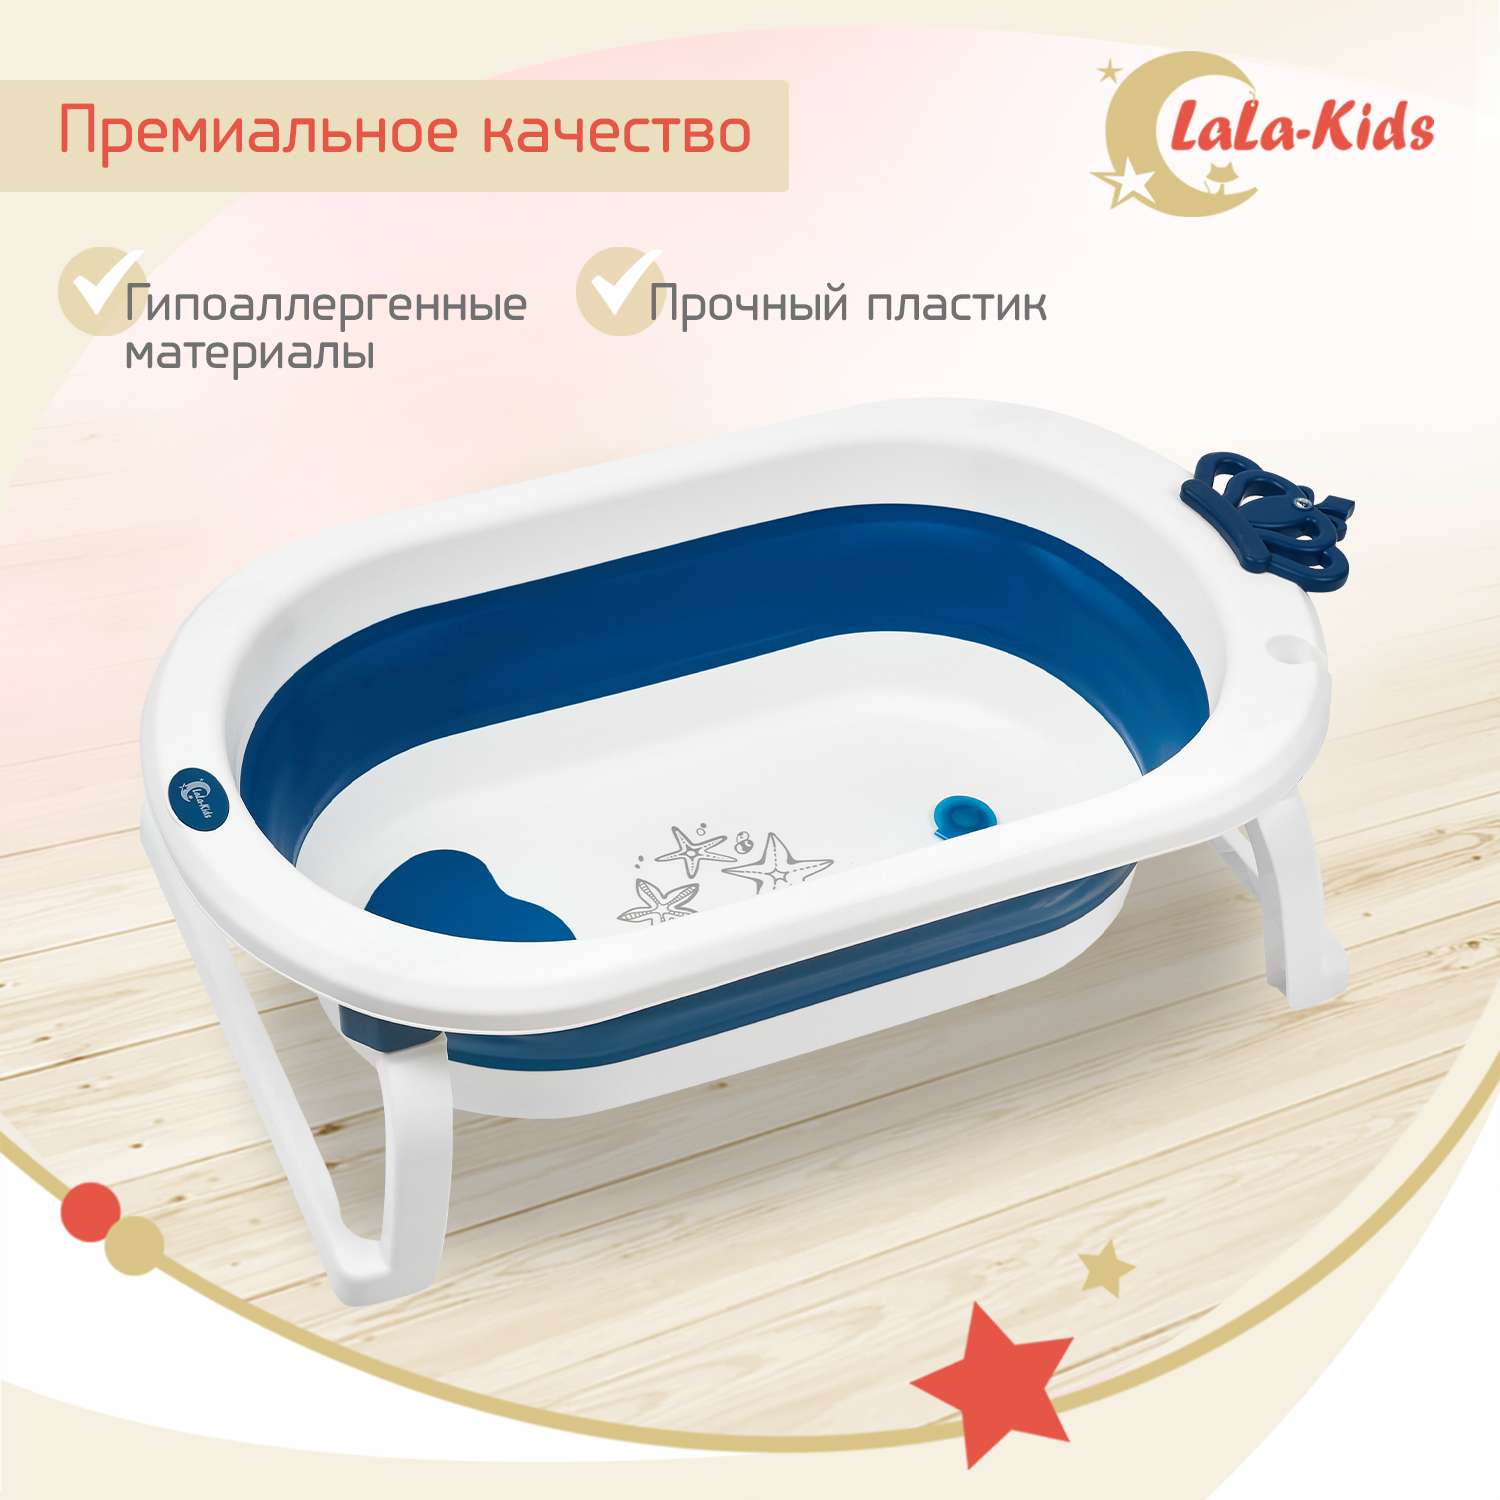 Детская ванночка LaLa-Kids складная с матрасиком для купания новорожденных - фото 9